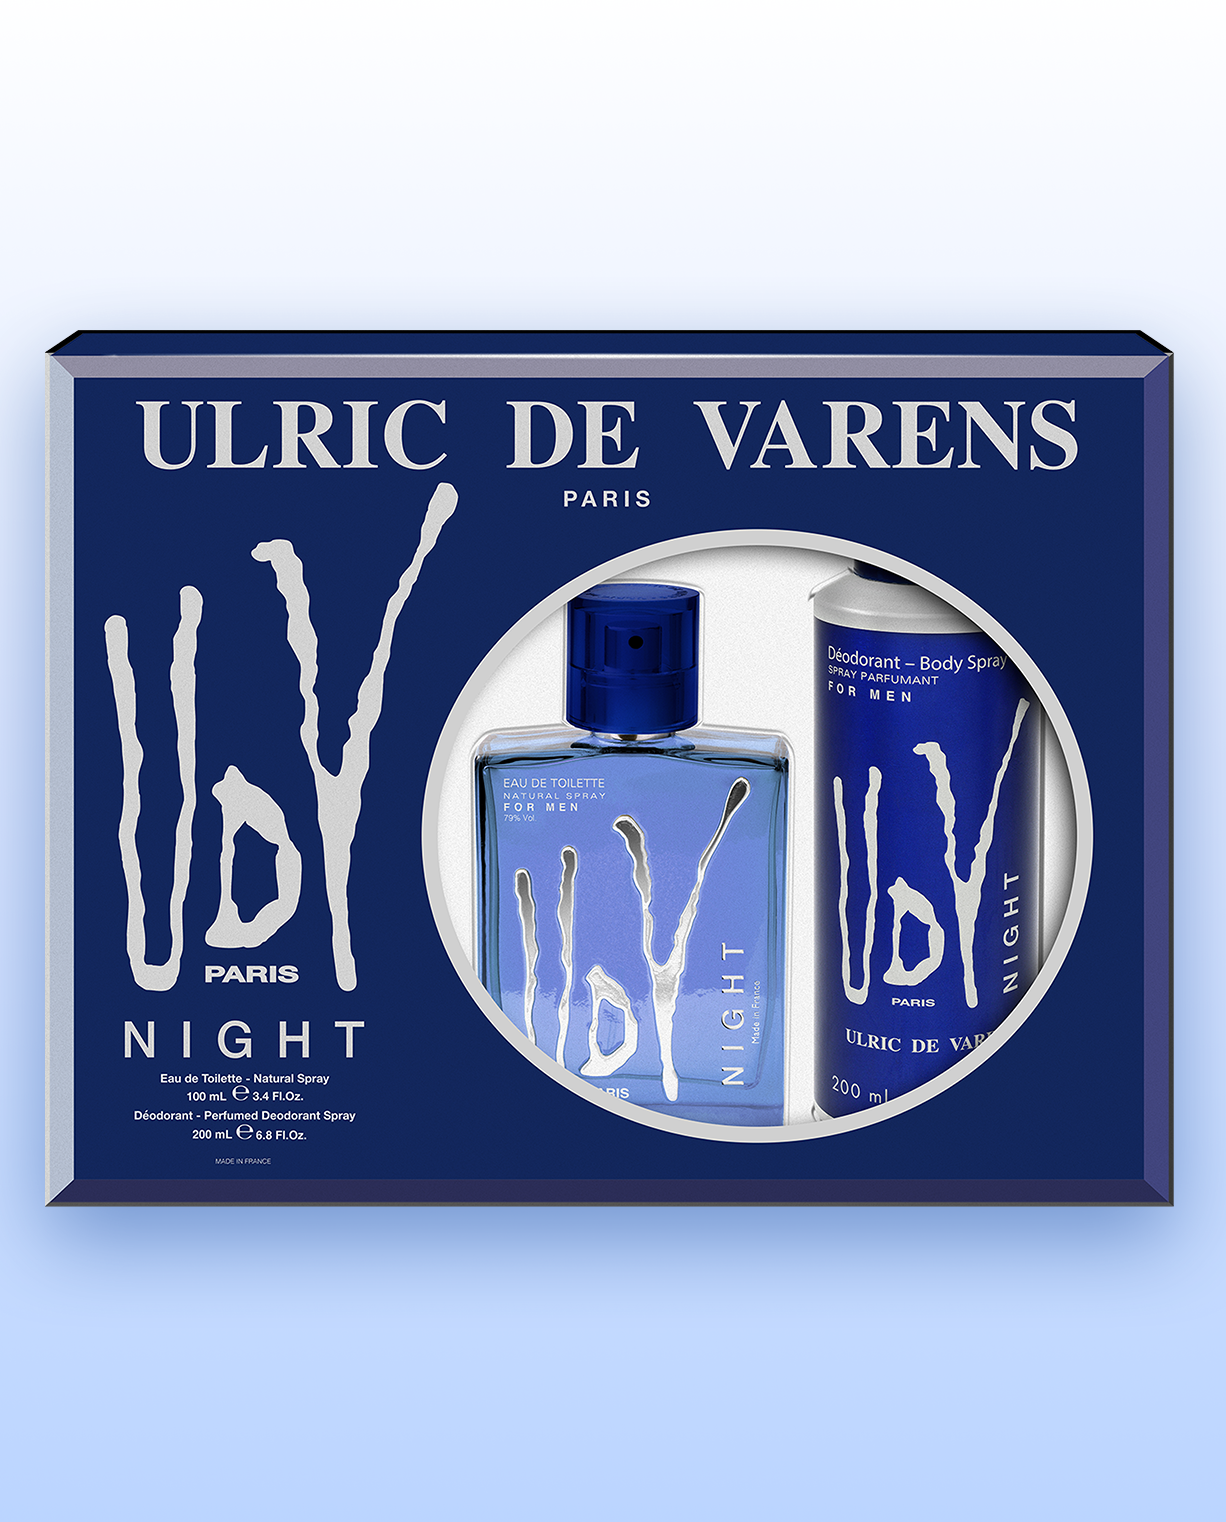 UDV Night Coffret - Ulric de Varens -  - #tag1# - #tag2# - #tag3# - #tag4#